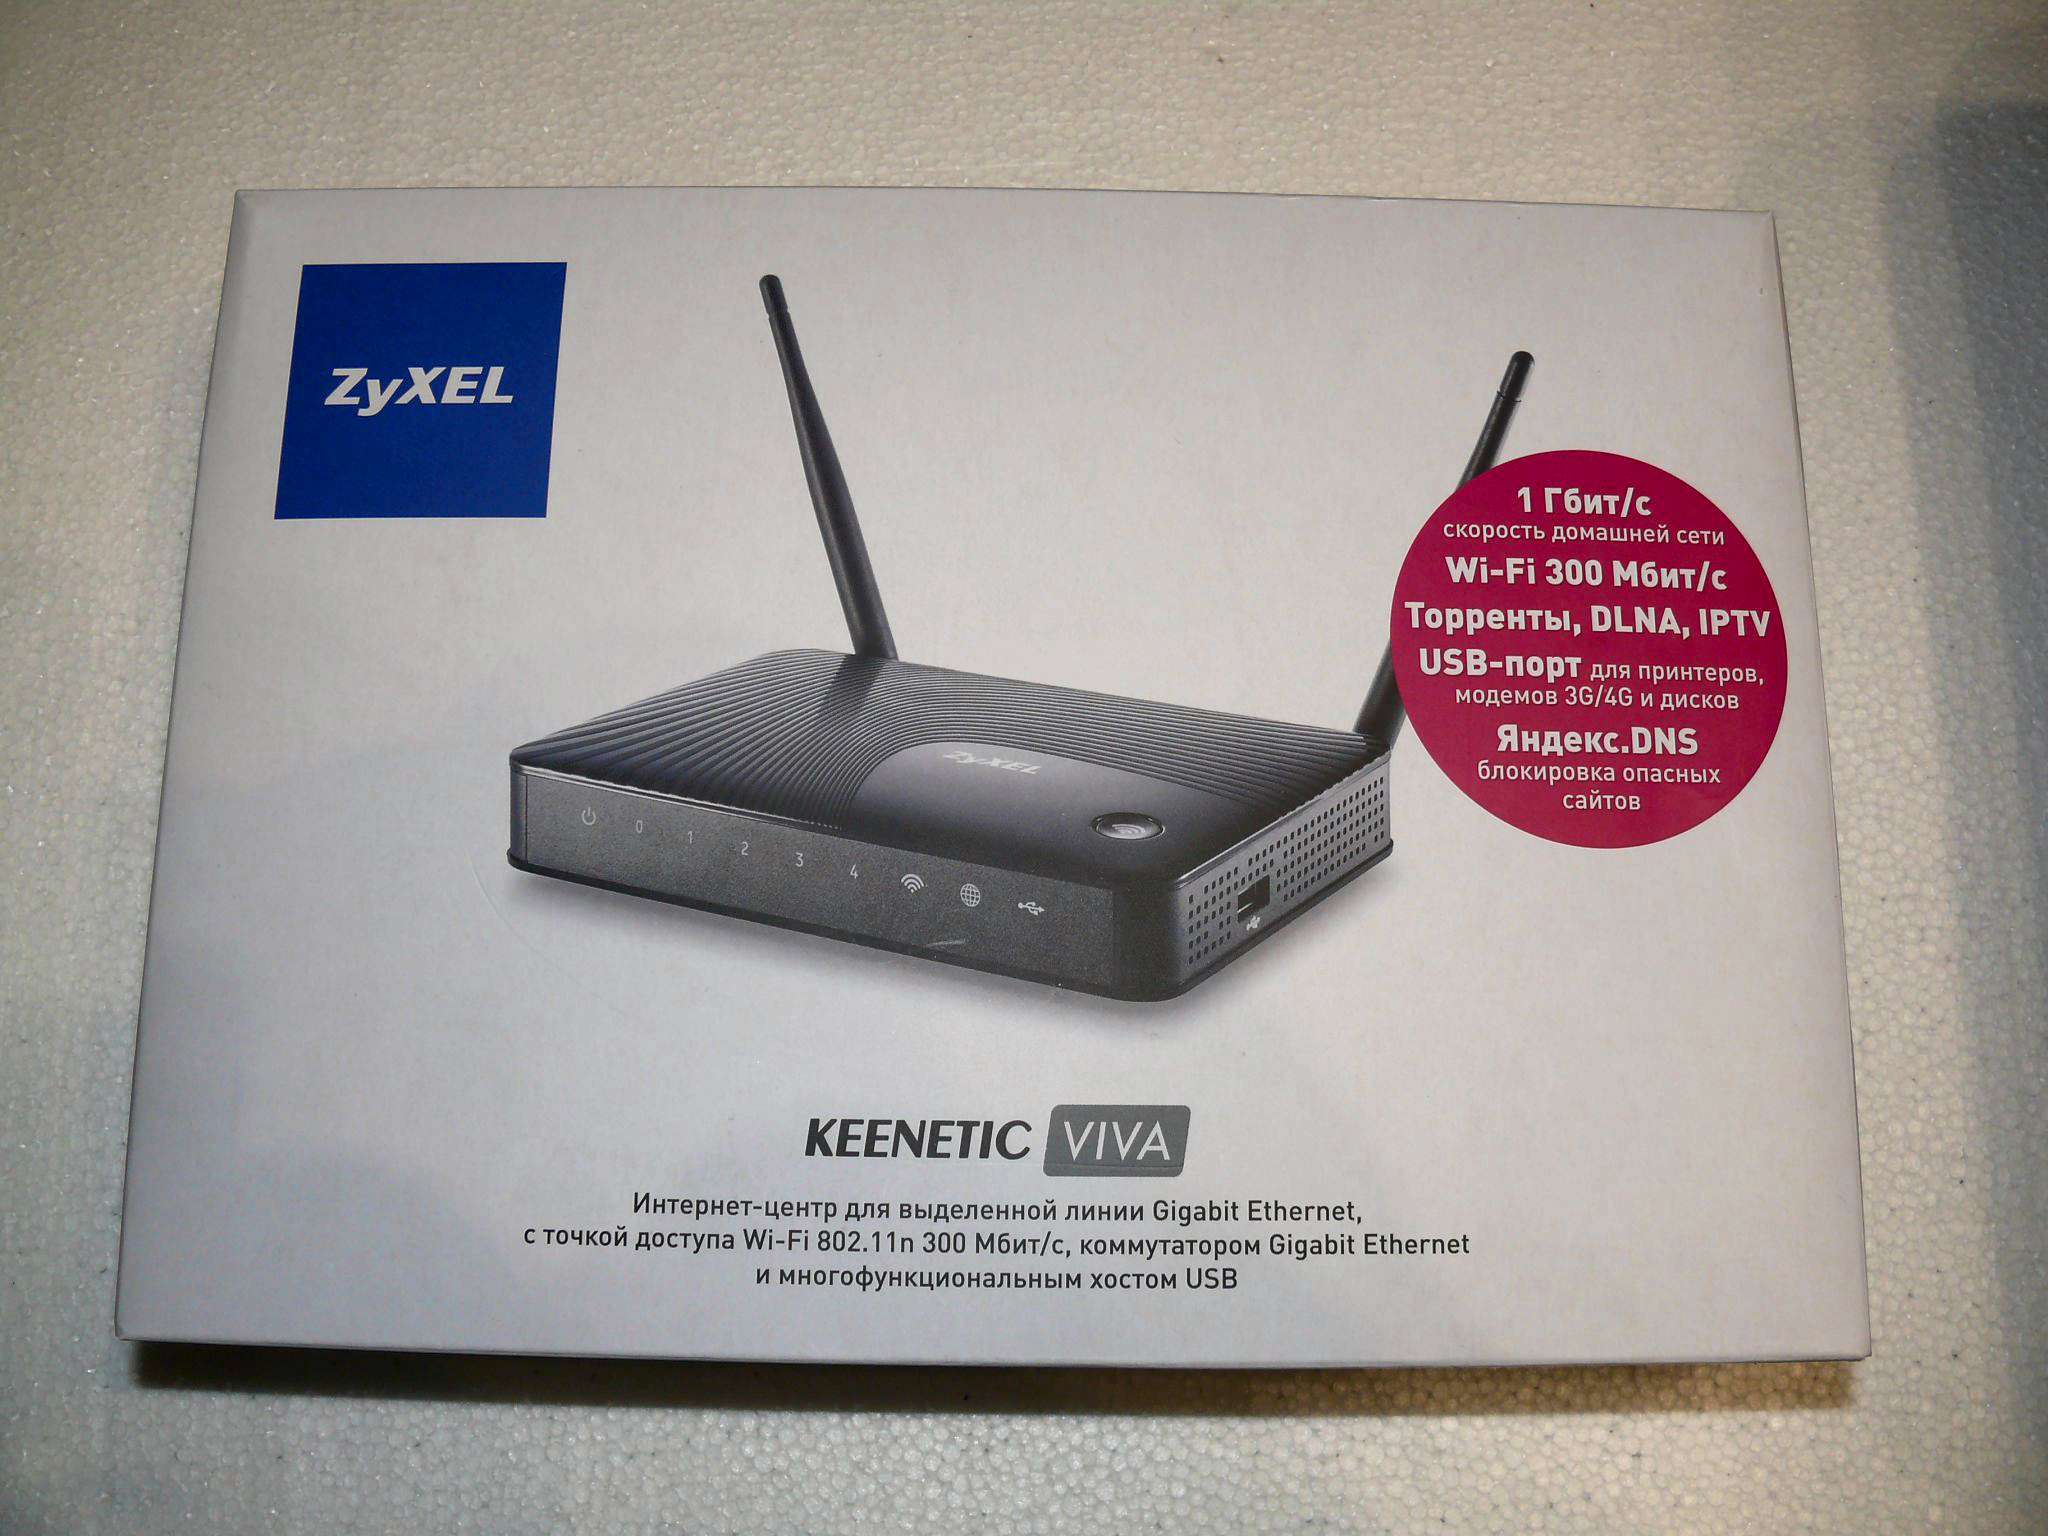 Keenetic hero 4g 2310. Wi-Fi роутер Keenetic Viva. Wi-Fi роутер Keenetic Hero 4g (KN-2310). Keenetic Hero 4g. Вива интернет.